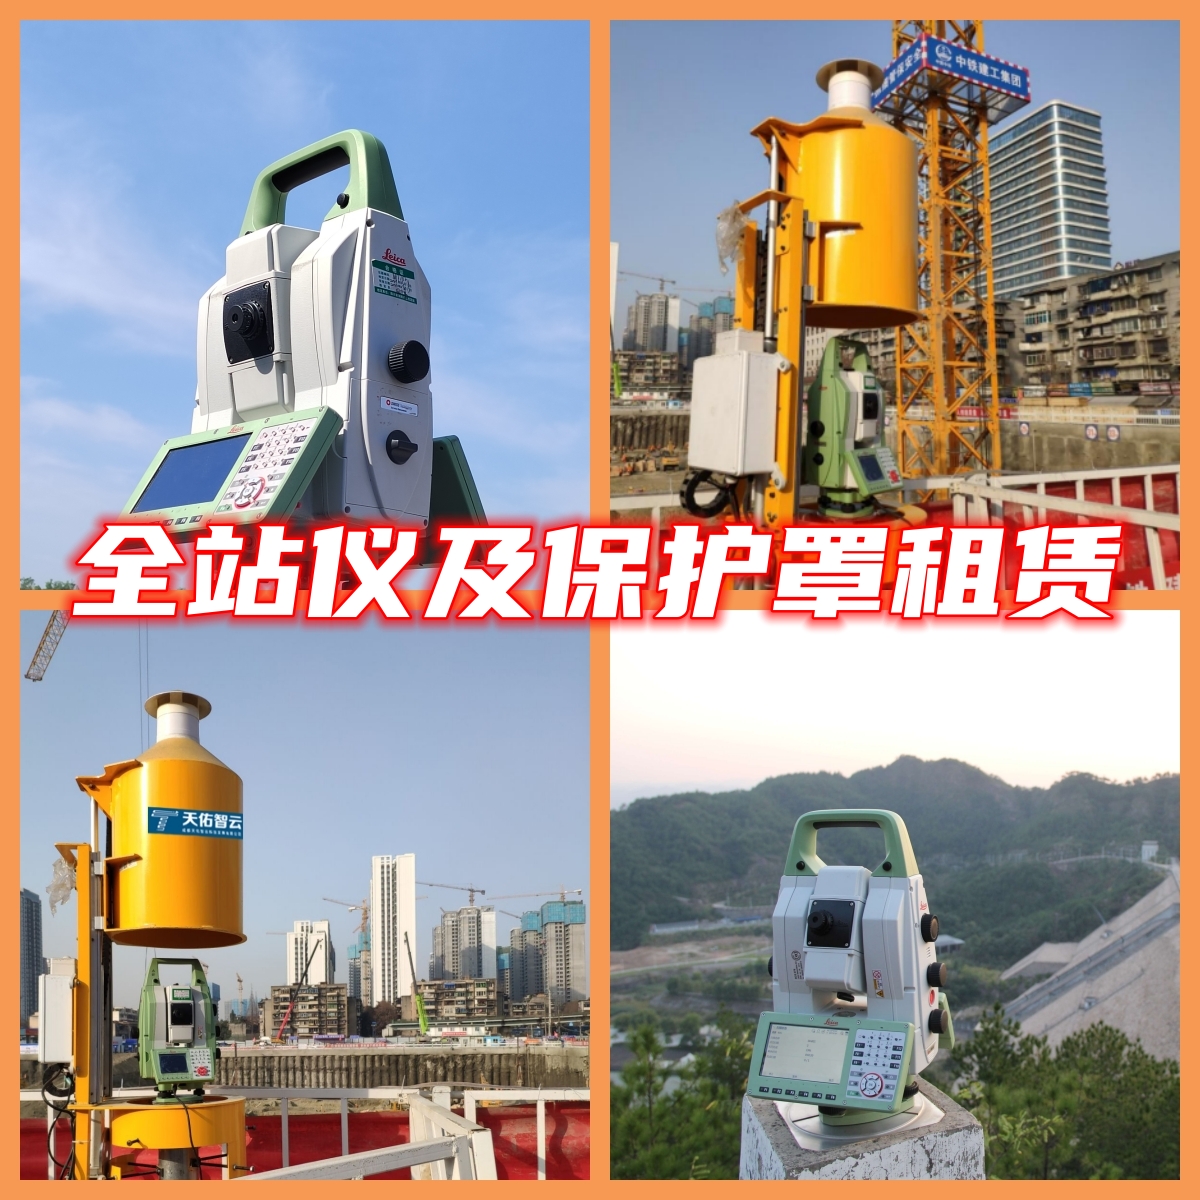 重庆市测量仪器厂家重庆租测量仪器/徕卡全站仪GNSS出租/天宝电子水准仪租赁